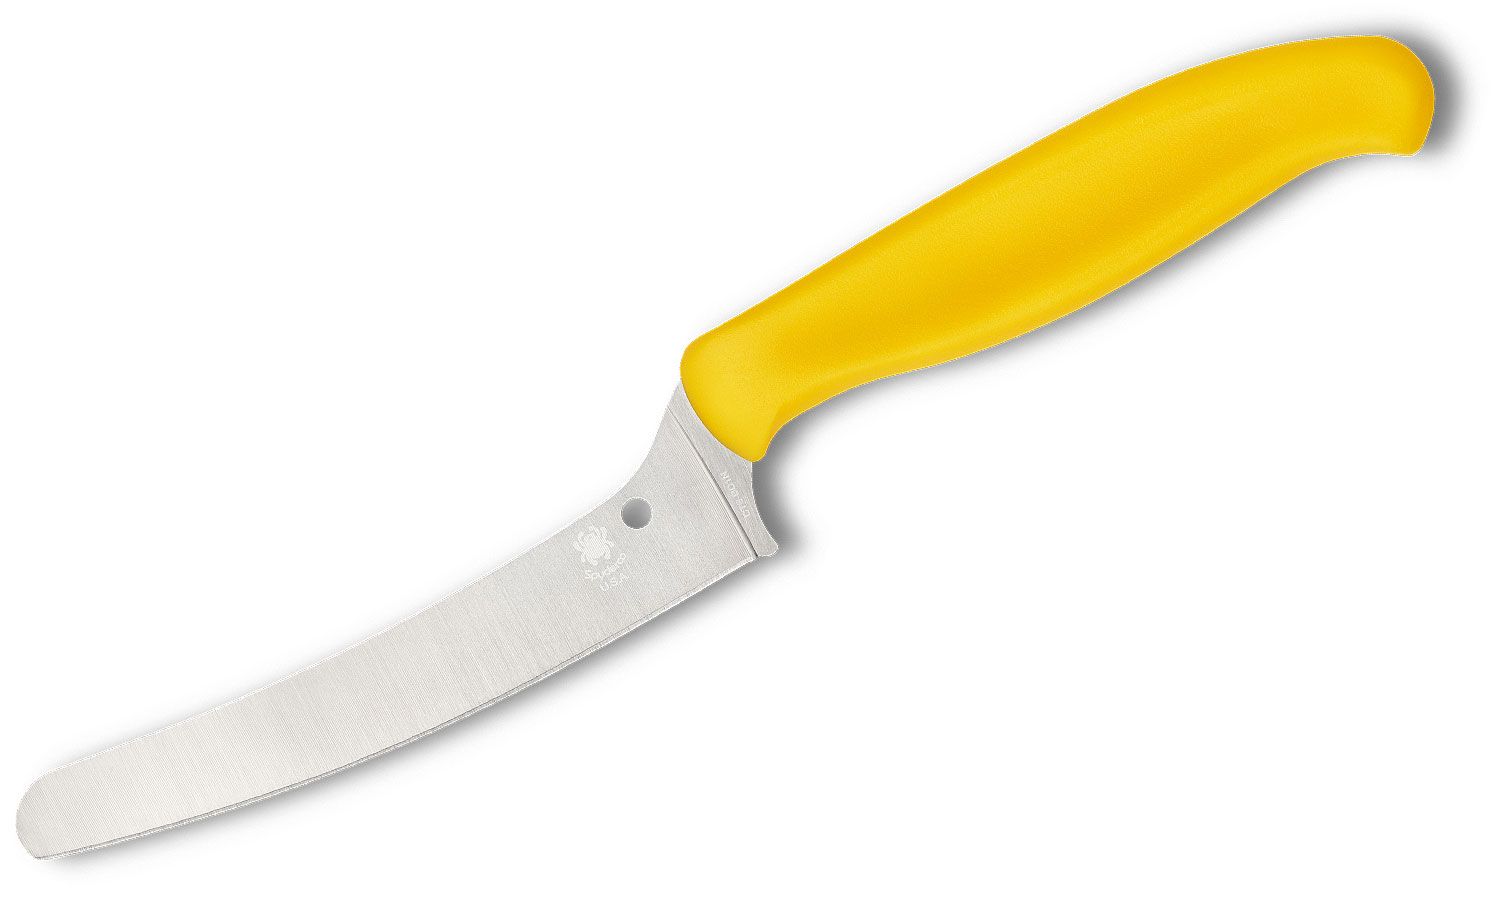 wenger kitchen knife